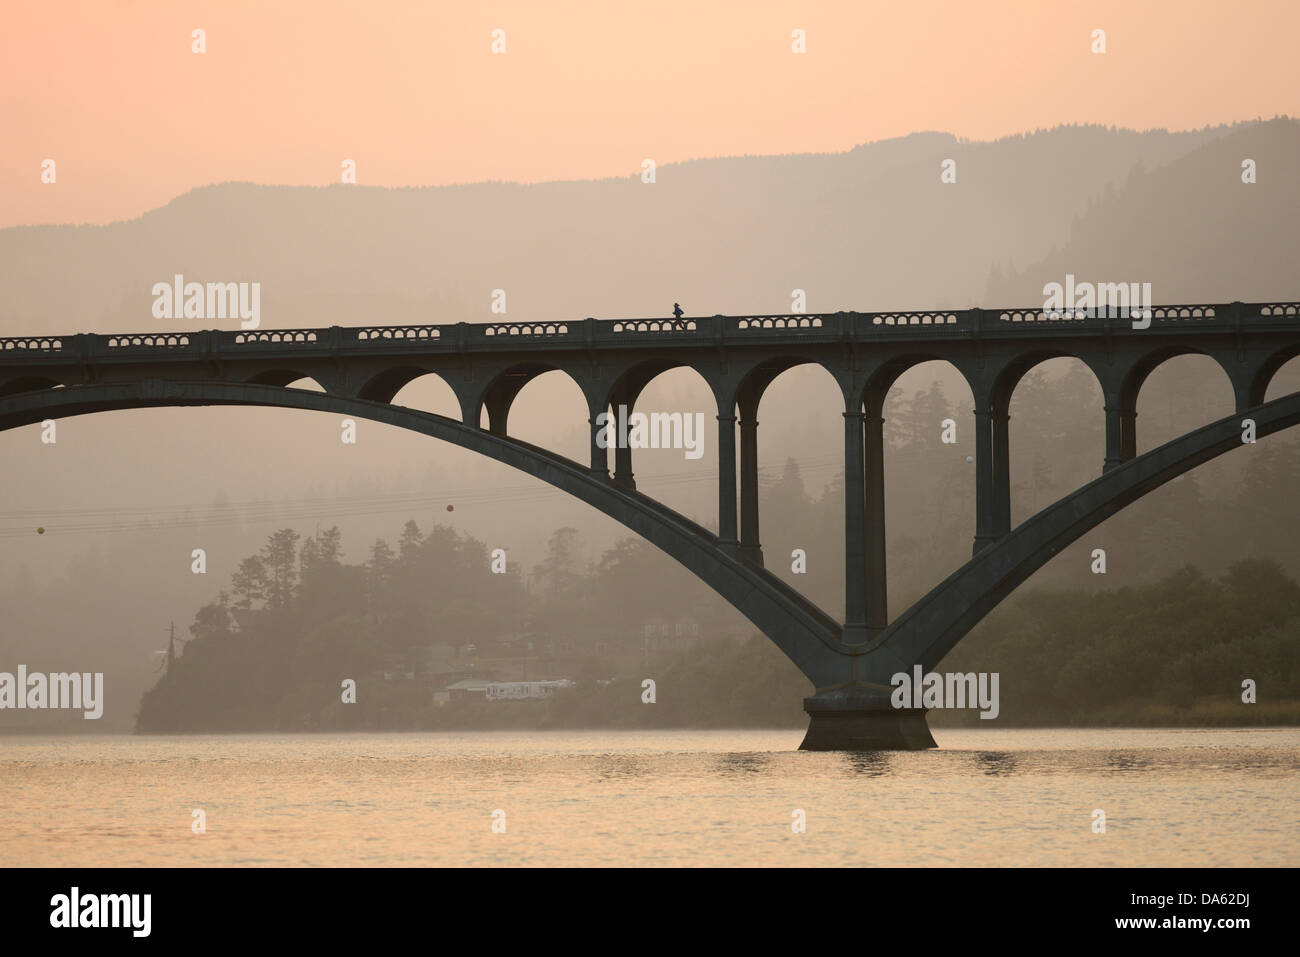 Stati Uniti d'America, Stati Uniti, America, America del nord, nord-ovest del Pacifico, Oregon Coast, Rogue River, fiume, il ponte, la mattina, sunrise, di nebbia Foto Stock